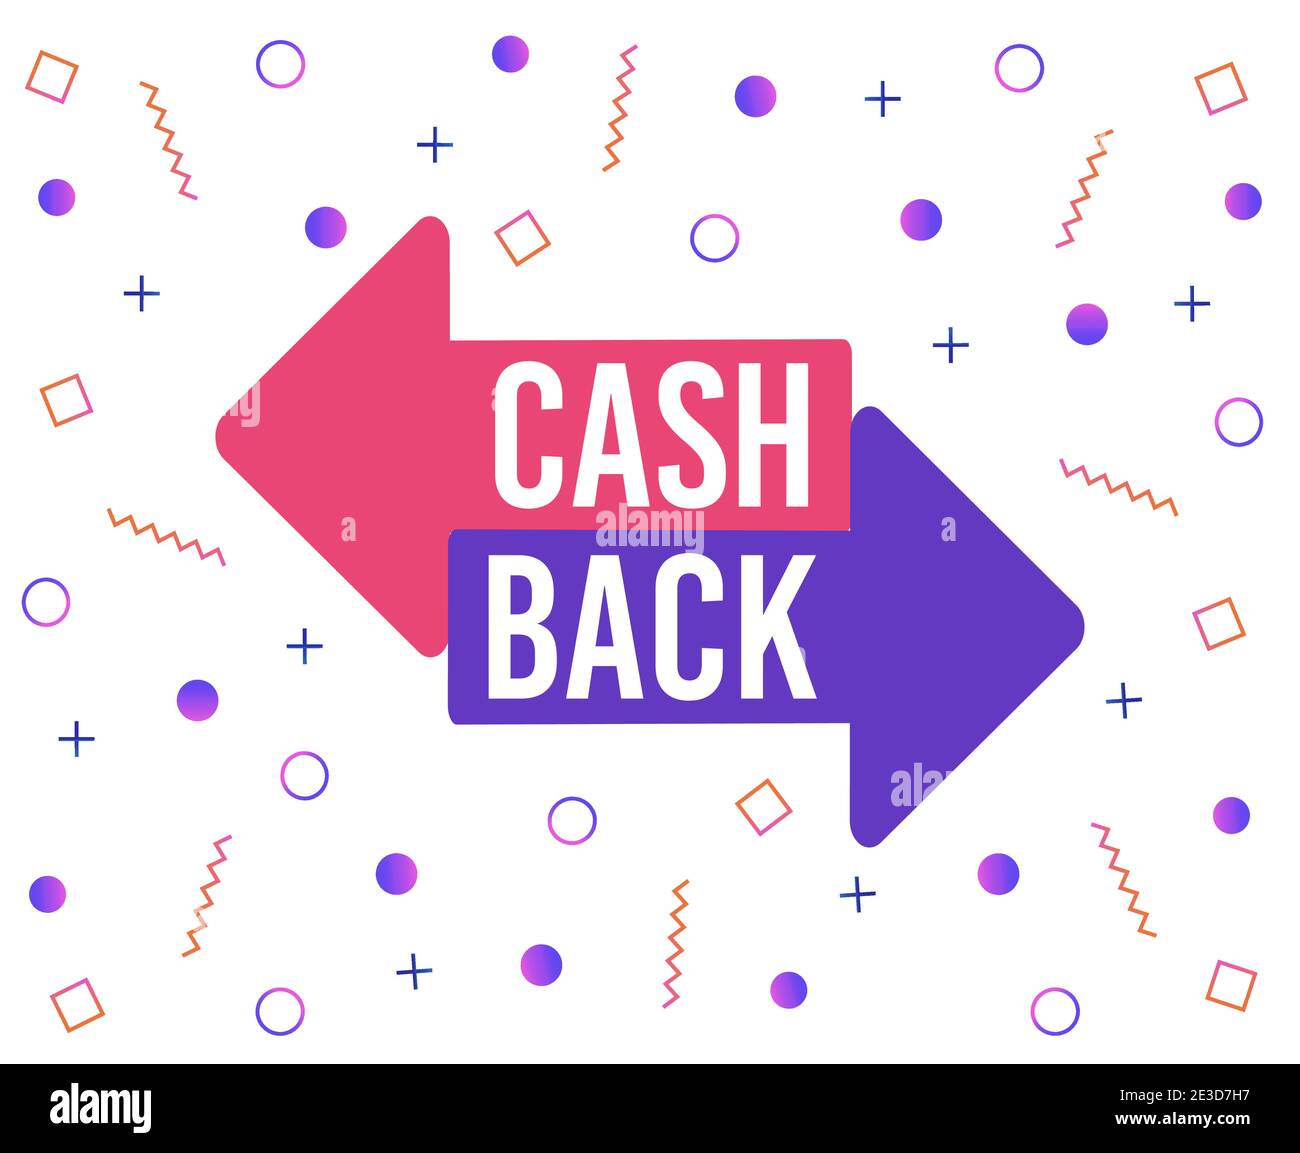 Banner Cash Back con forme e linee astratti. Cashback offrire simboli geometrici colorati e tipografia, rimborso denaro. Illustrazione Vettoriale